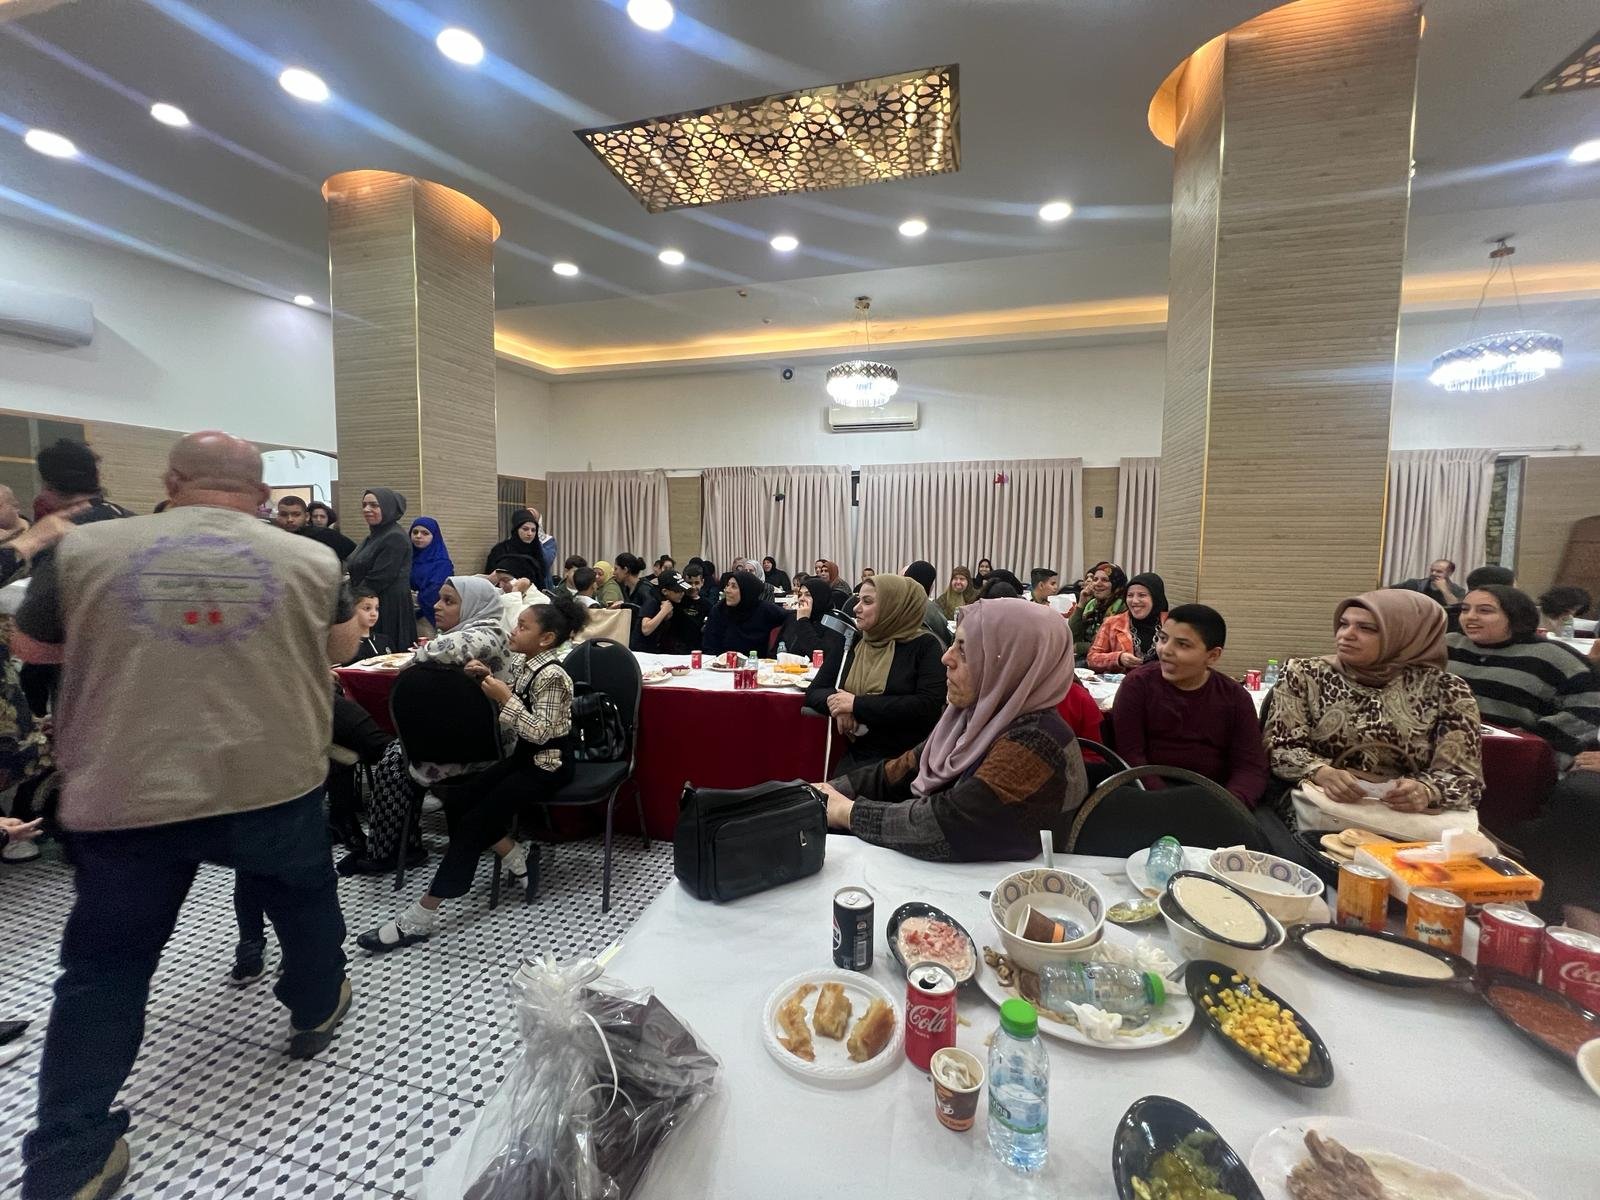 إفطار جماعي لرواد مركز "مودة" بمشاركة أكثر من 150 شخص-6